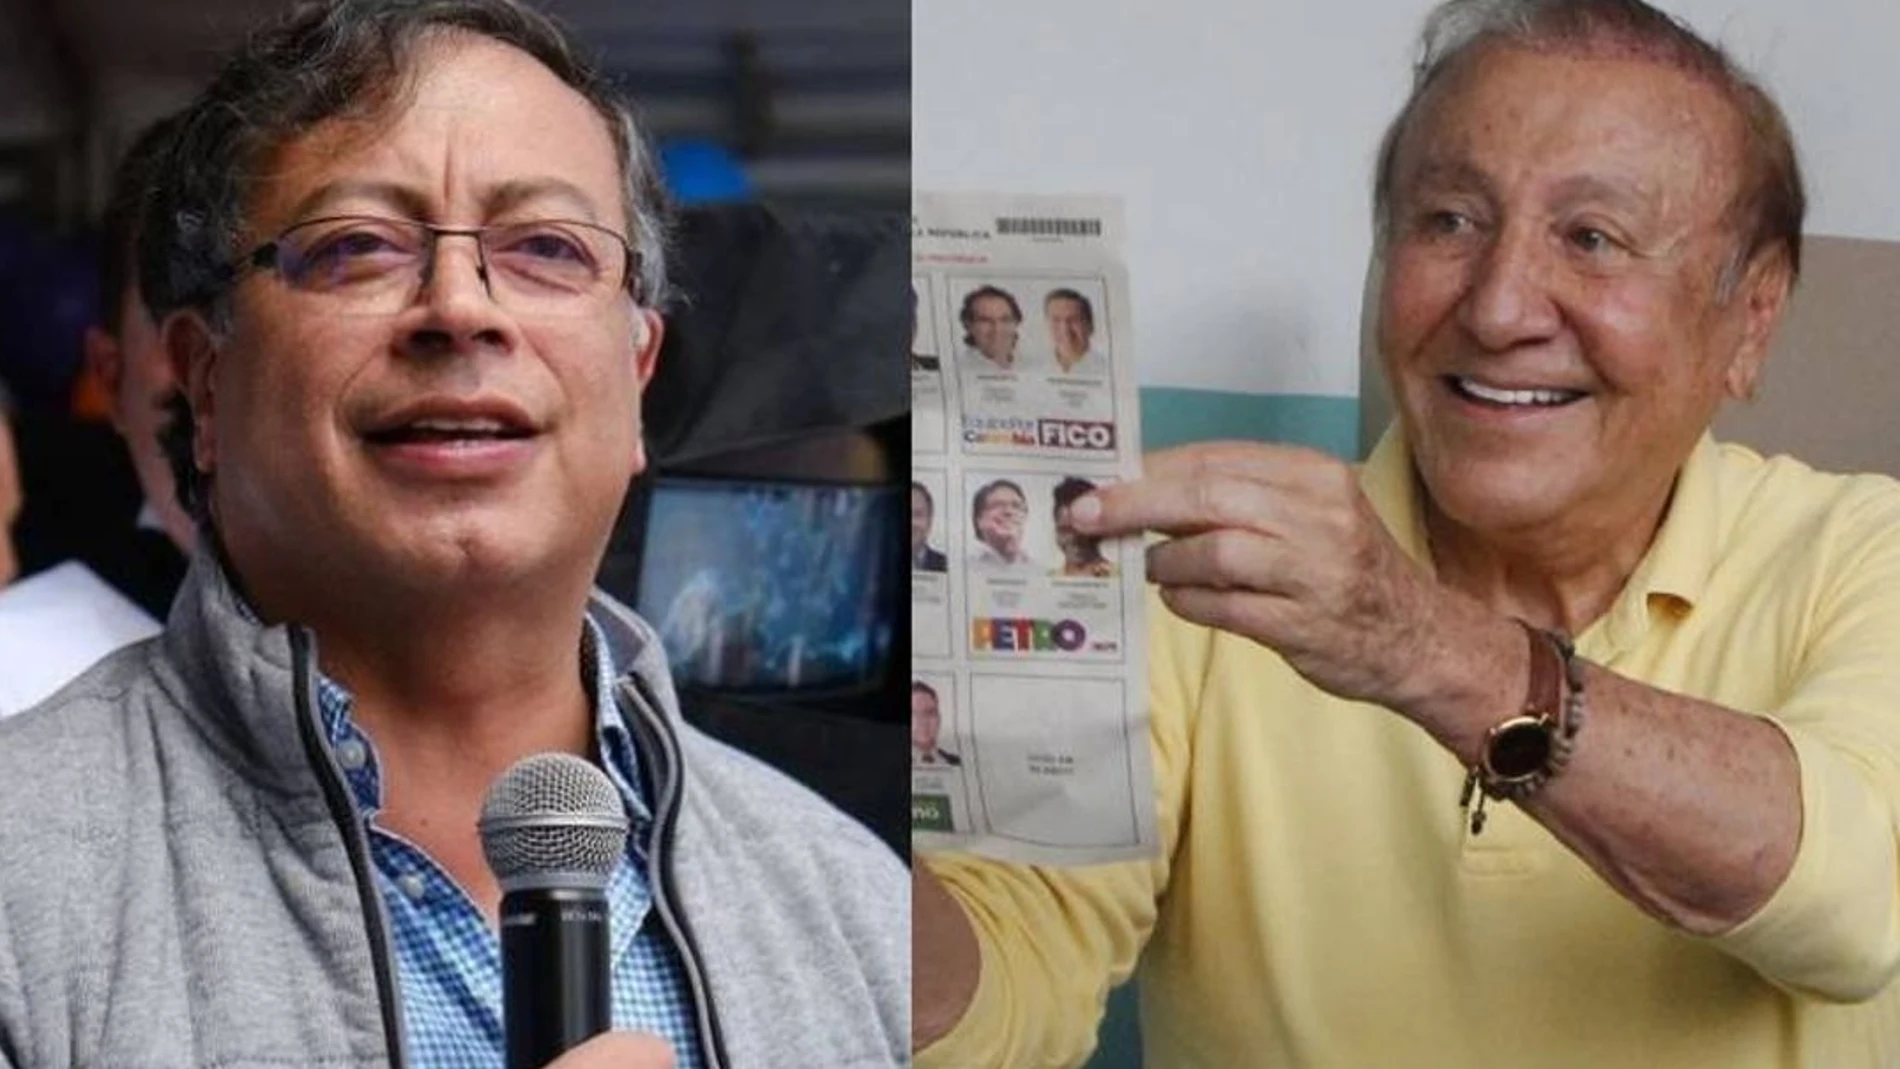 Gustavo Petro y Rodolfo Hernández se enfrentan en la segunda vuelta en las elecciones presidenciales de Colombia